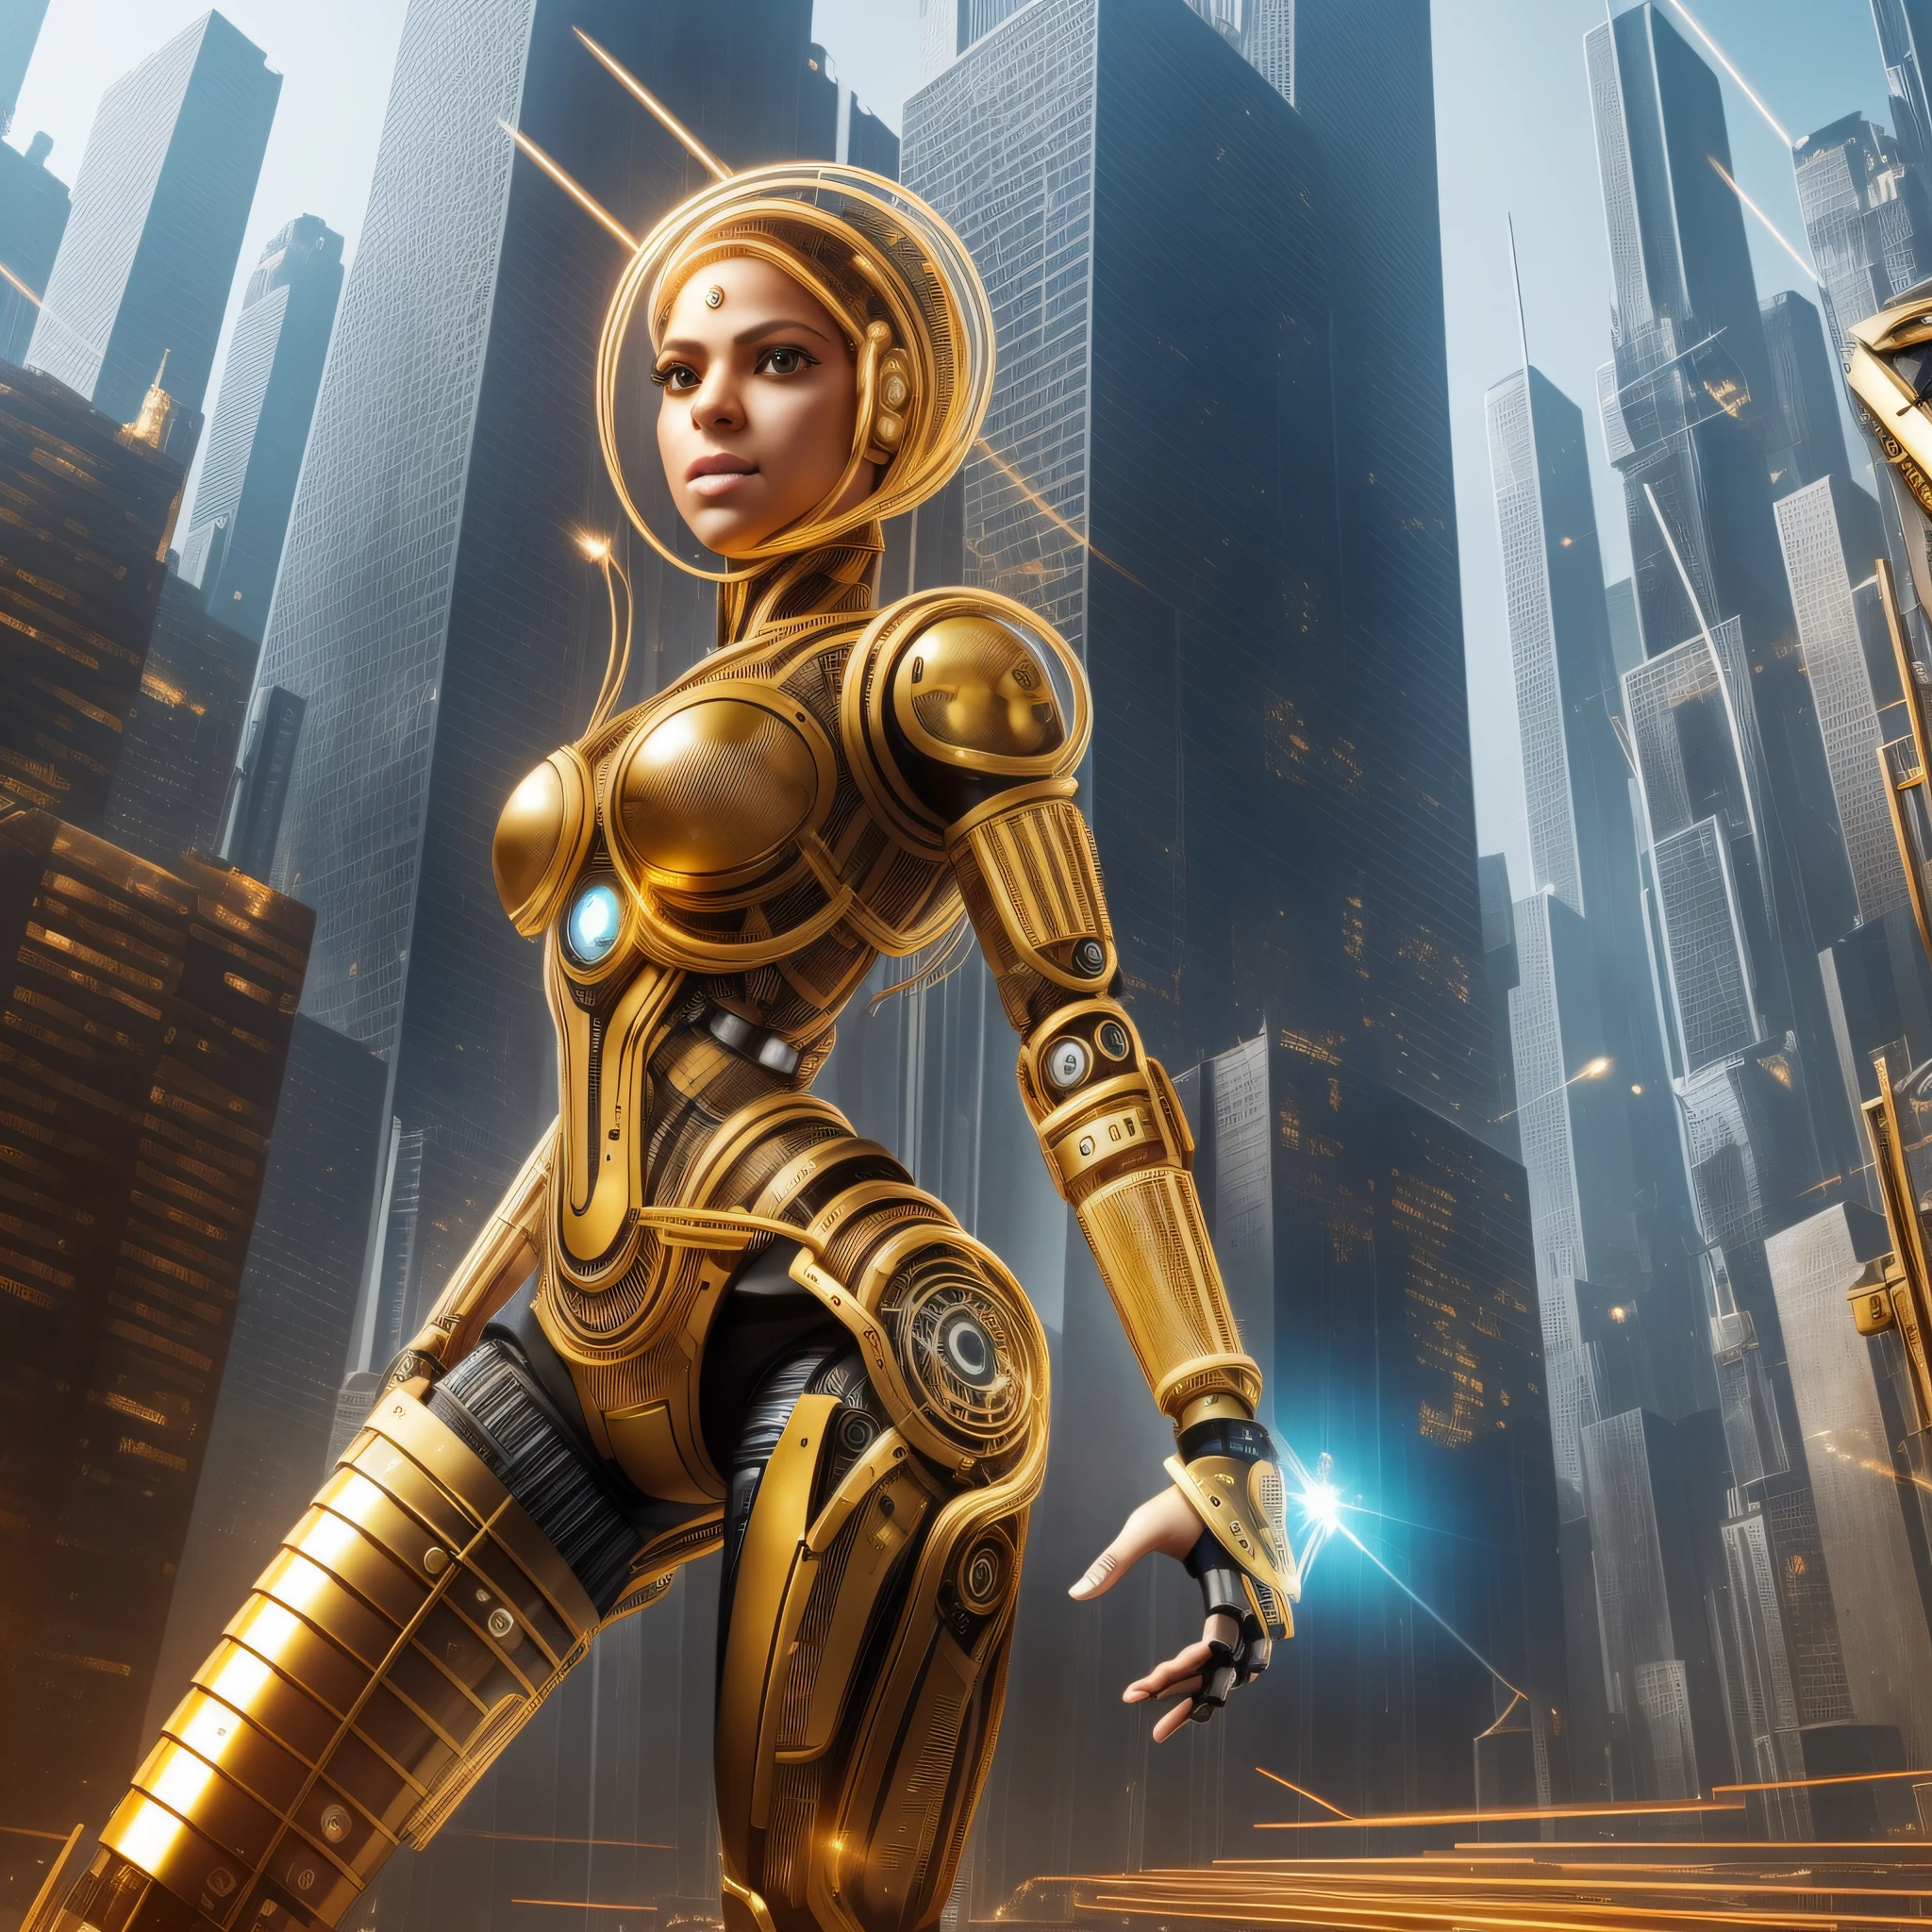 アンドロイド女性1人, シャキーラの顔, 本体に金属部品が付いている, ロボットの腕と脚, 体の横にある金色のワイヤーと歯車, 顔にマイクロチップ, 未来都市の背景,